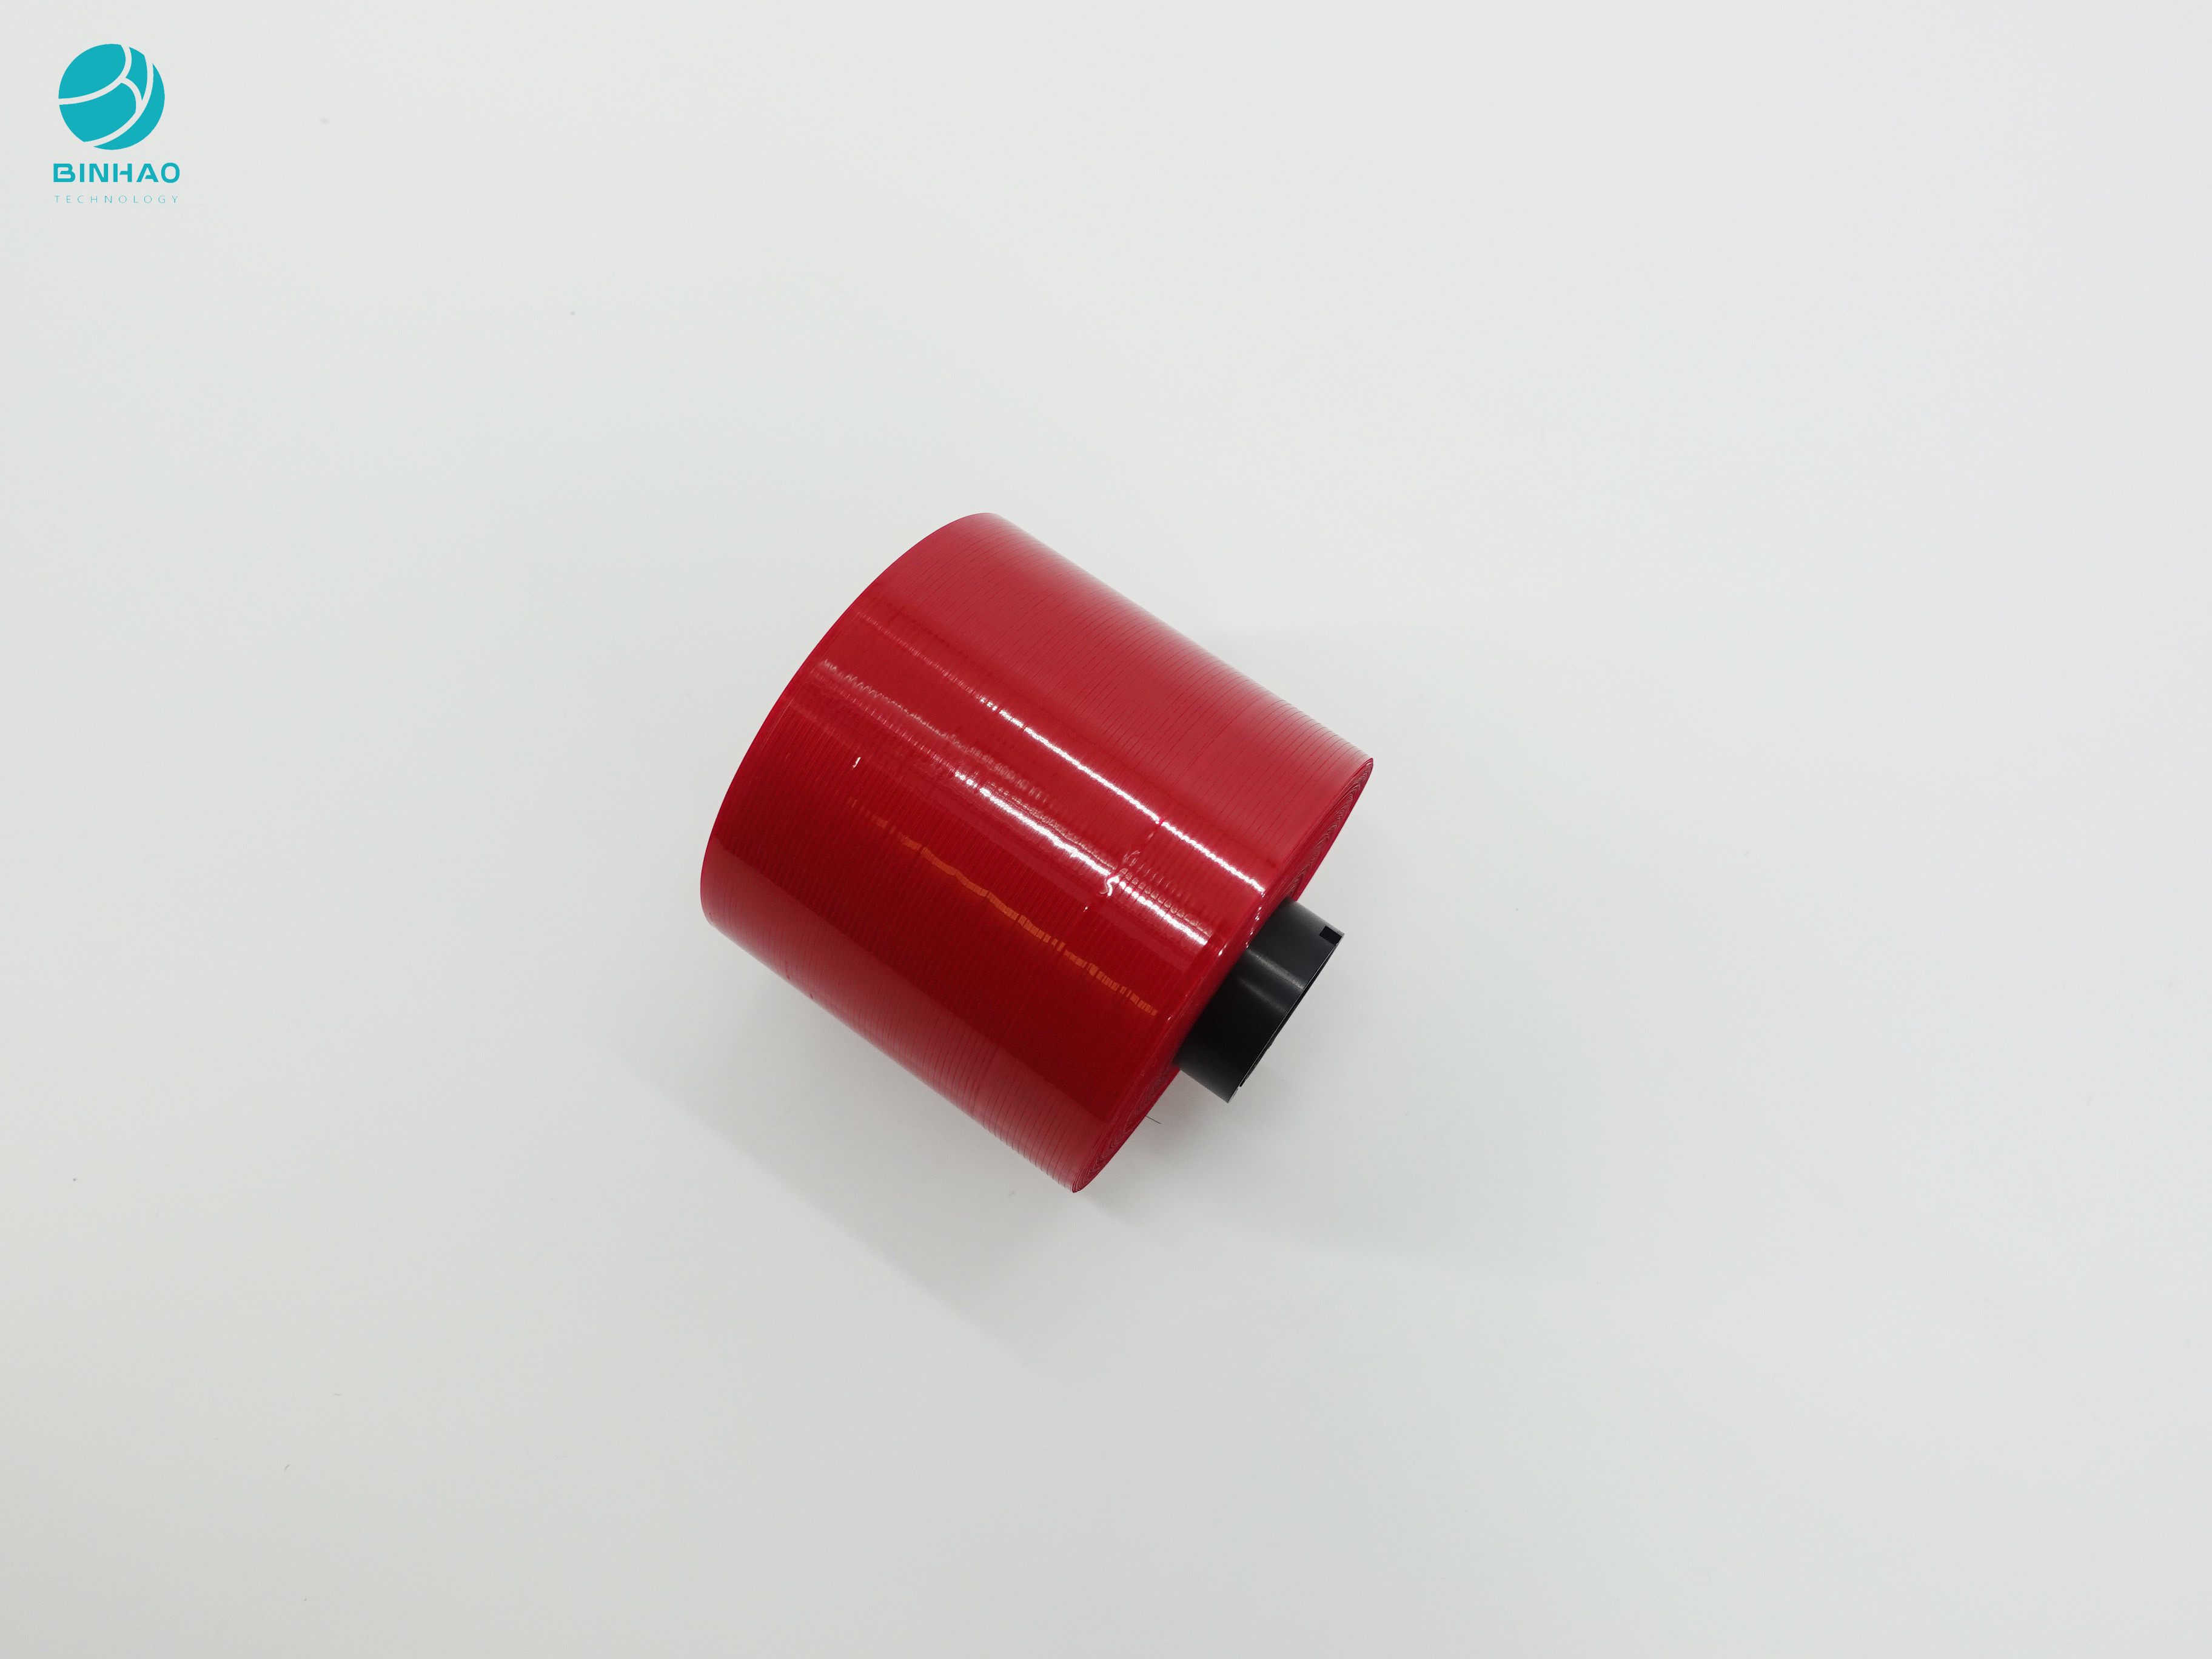 सिगरेट के डिब्बे की पैकिंग के लिए गहरे लाल रंग के एंटी जालसाज़ी डिज़ाइन 3 मिमी आंसू टेप